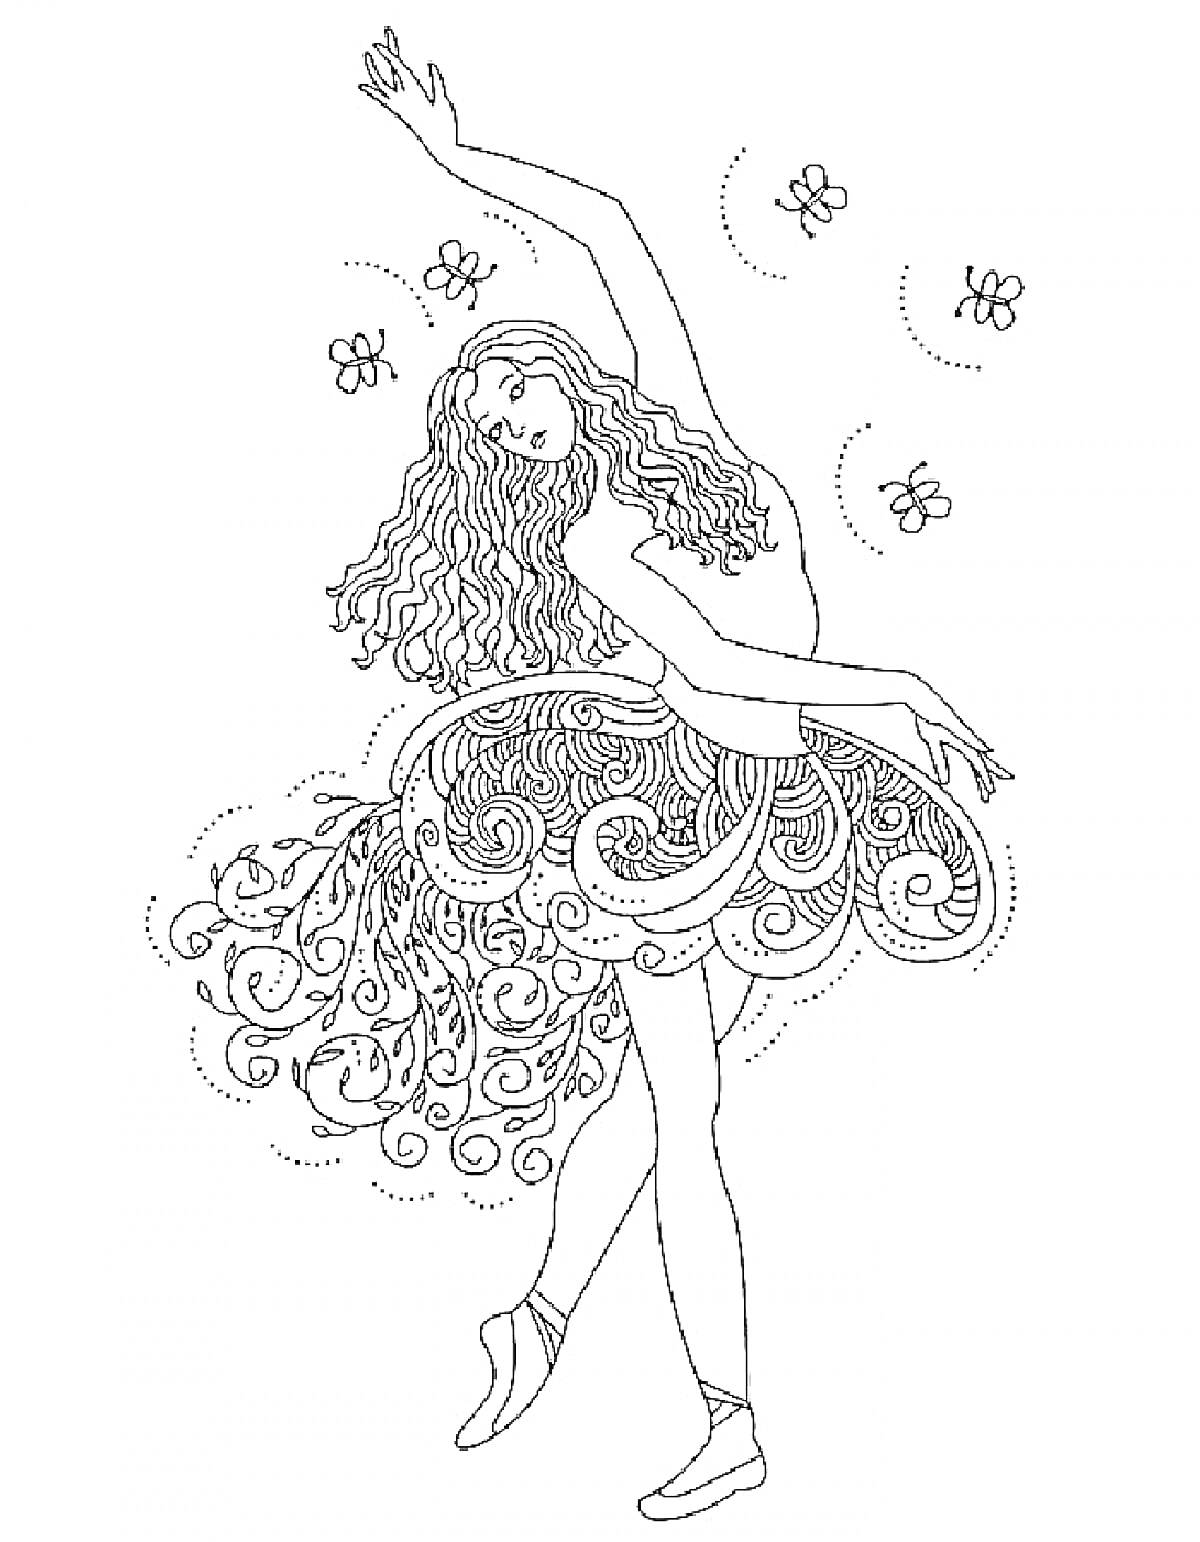 Раскраска Балерина с длинными волосами, фигурные узоры на платье, парящие бабочки.